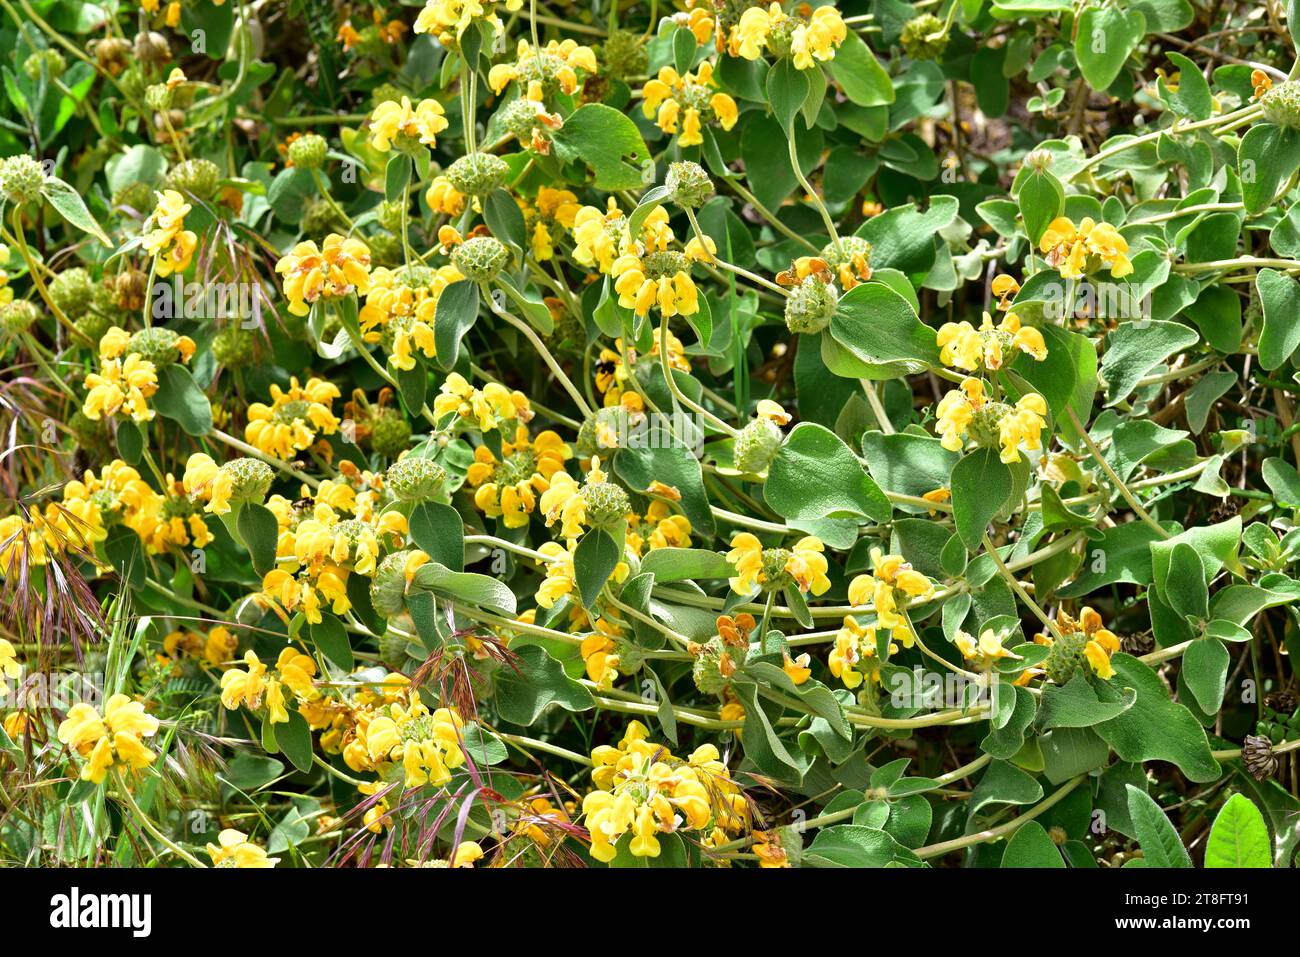 La sauge de Jérusalem à feuilles dorées (Phlomis chrysophylla) est un arbuste à feuilles persistantes originaire du sud-ouest de l'Asie. Plante à fleurs. Banque D'Images